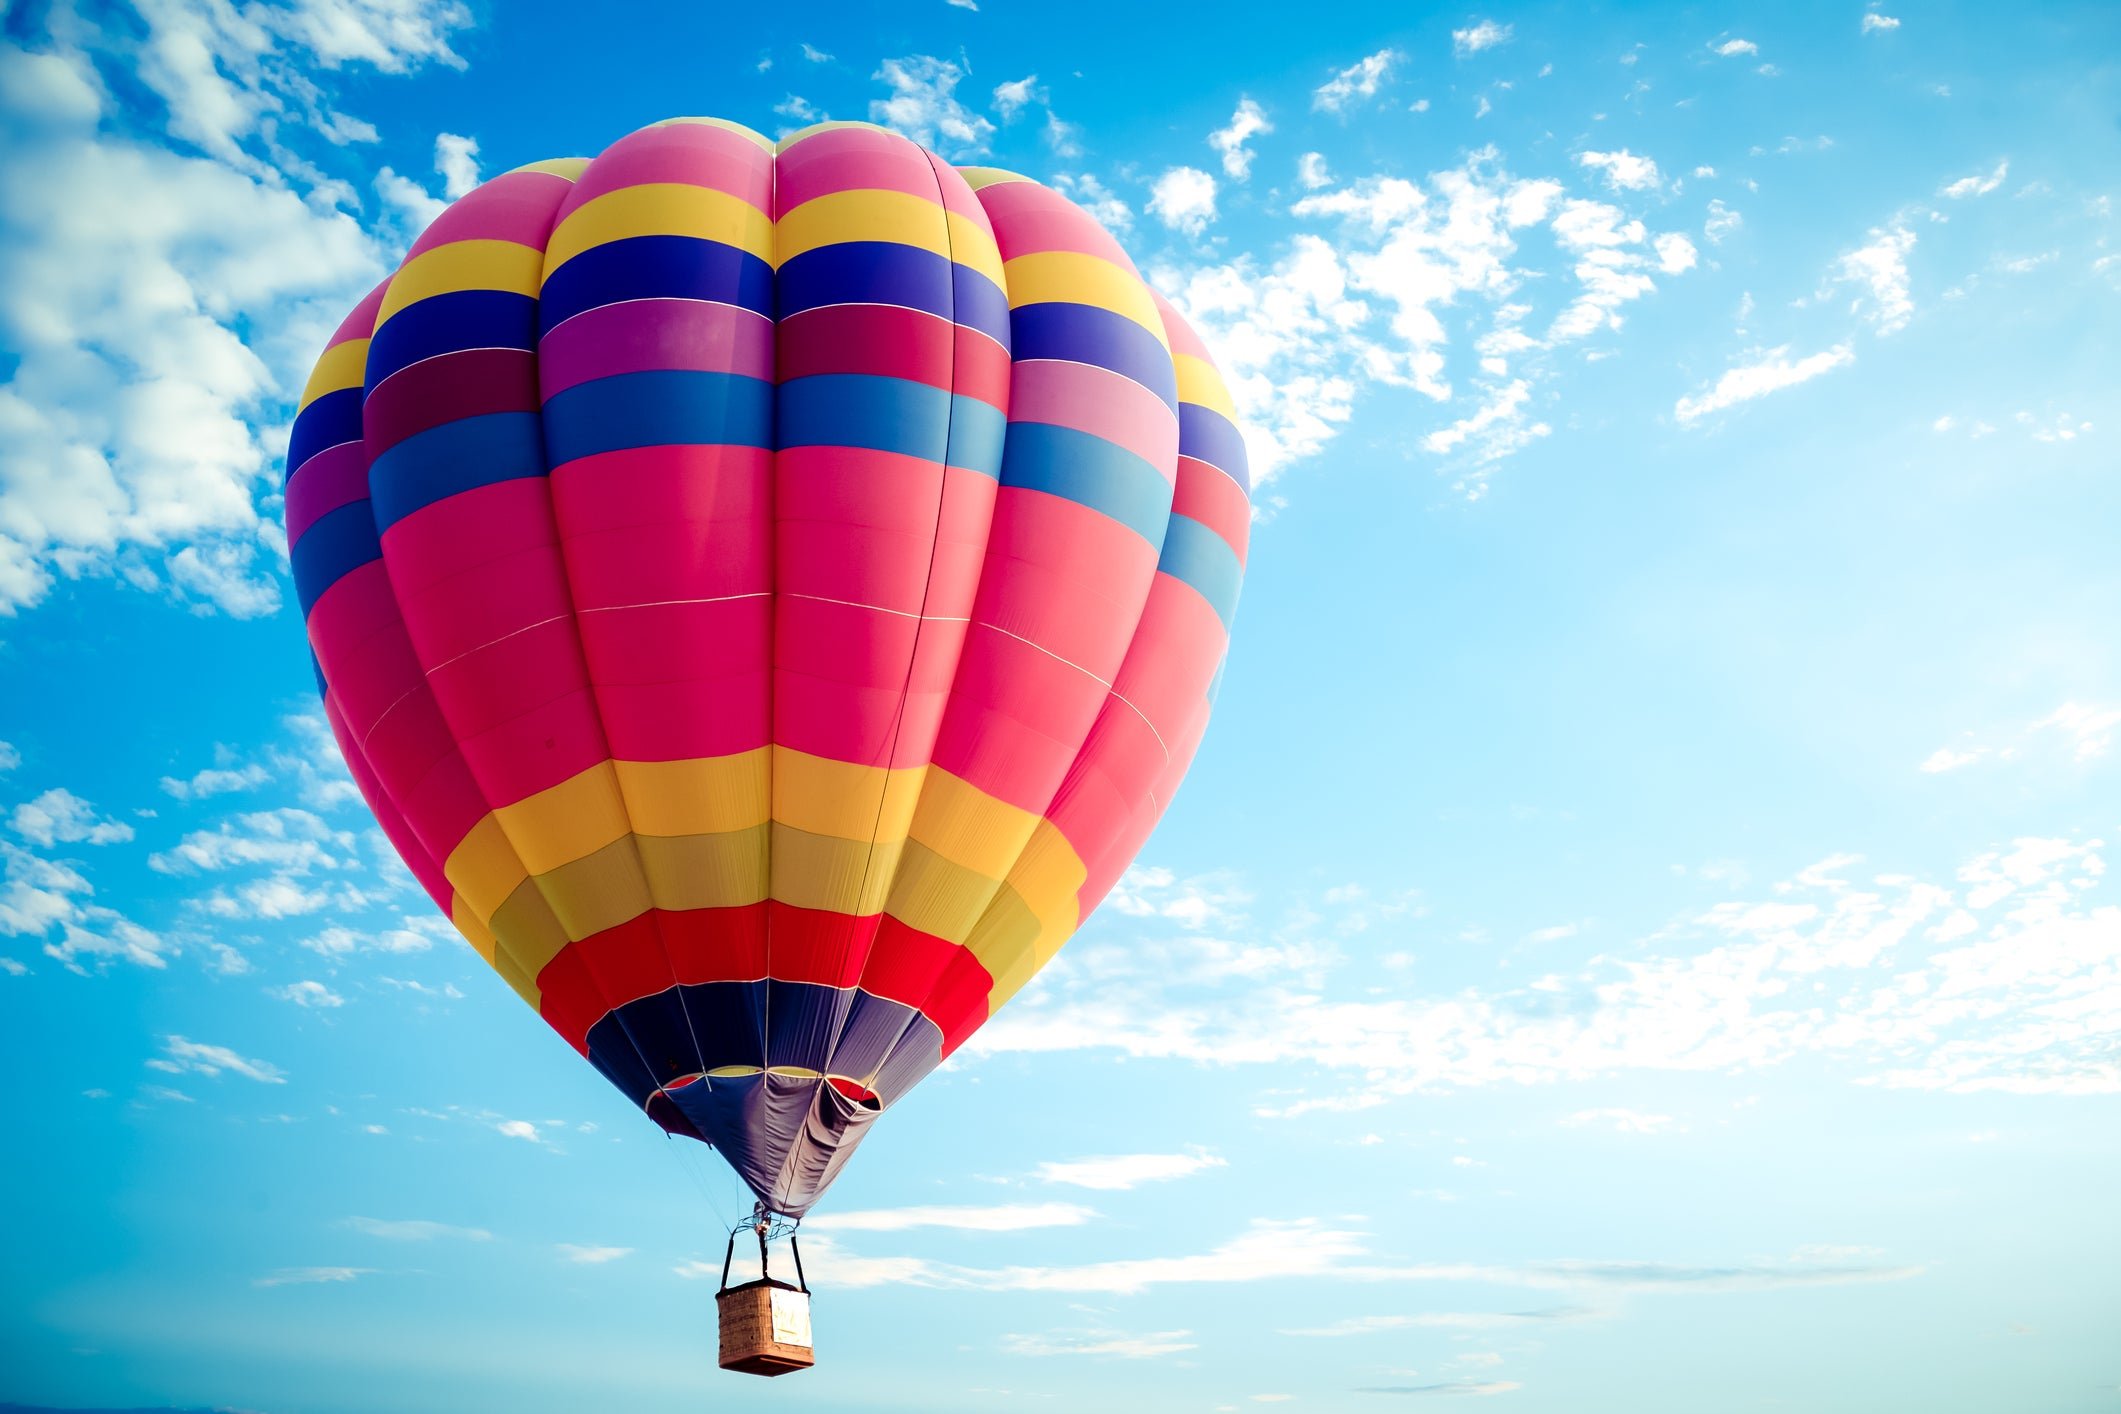 Is a Balloon Mortgage Ever a Good Idea?